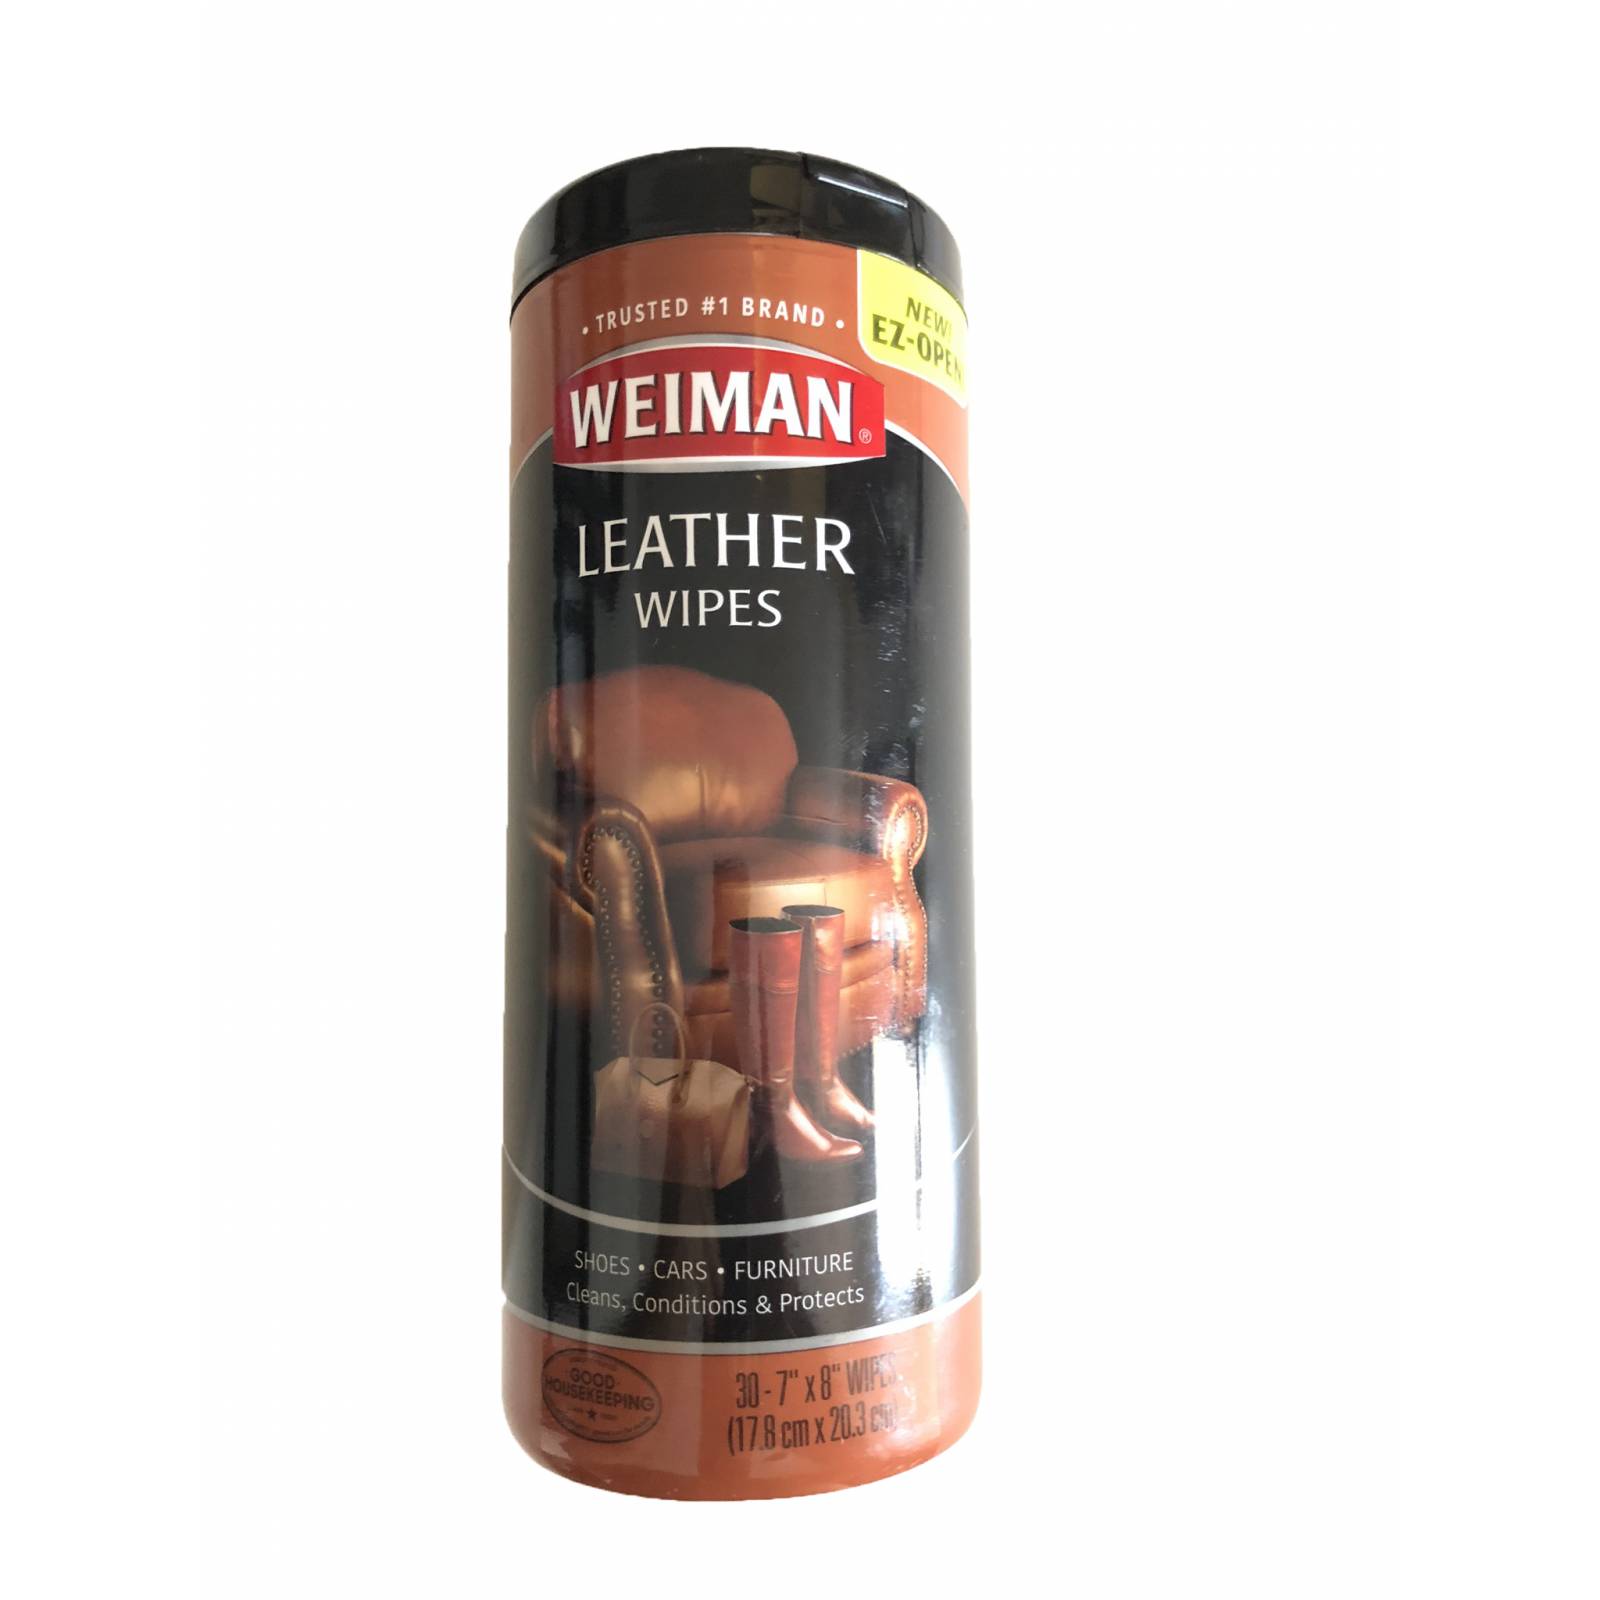 Weiman, Toallitas humedas para la limpieza, acondicionamiento y protección de pieles, sirve para autos, muebles y calzado de cuero, piel. 30 piezas.